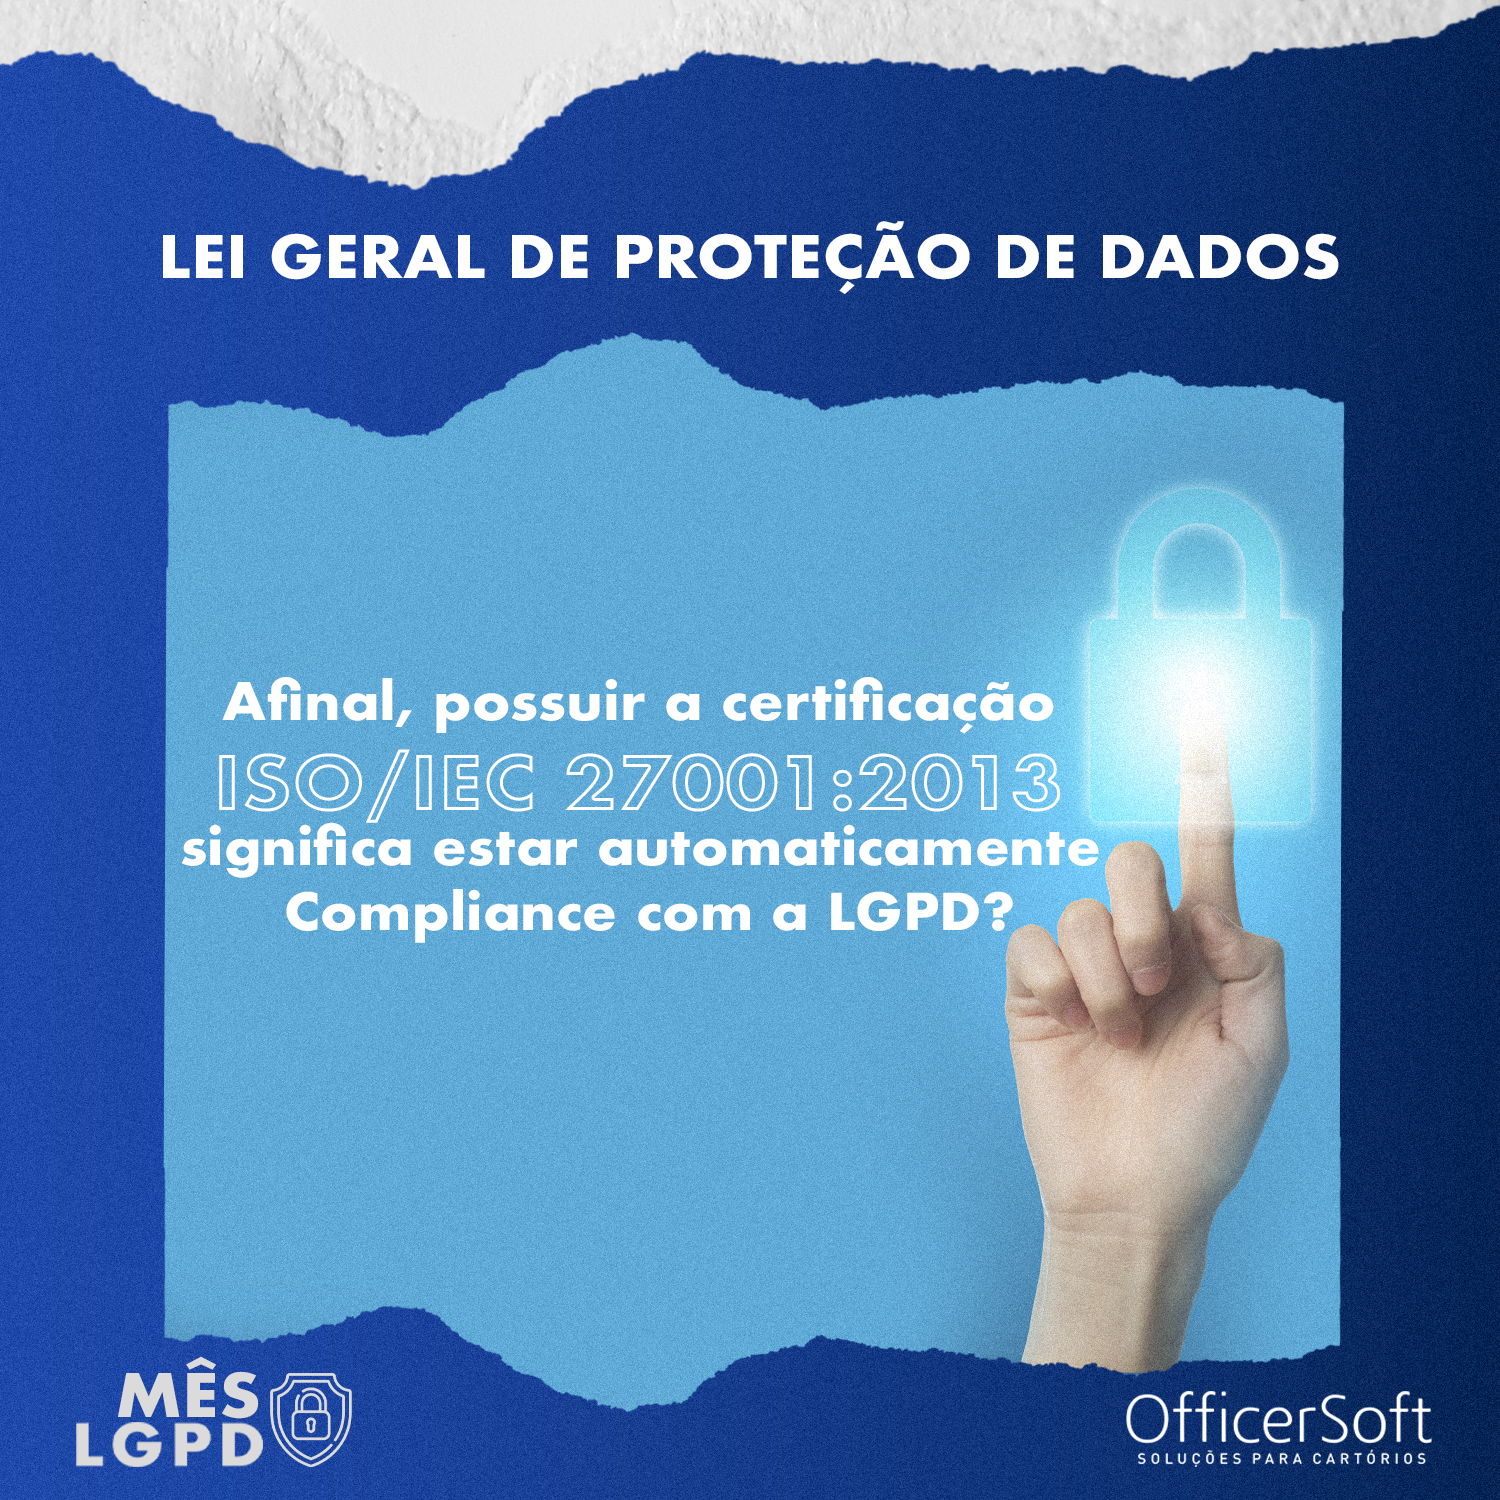 Mês LGPD – Afinal Possuir a Certificação ISO/IEC 27001:2013 Significa estar Automaticamente Compliance com a LGPD?